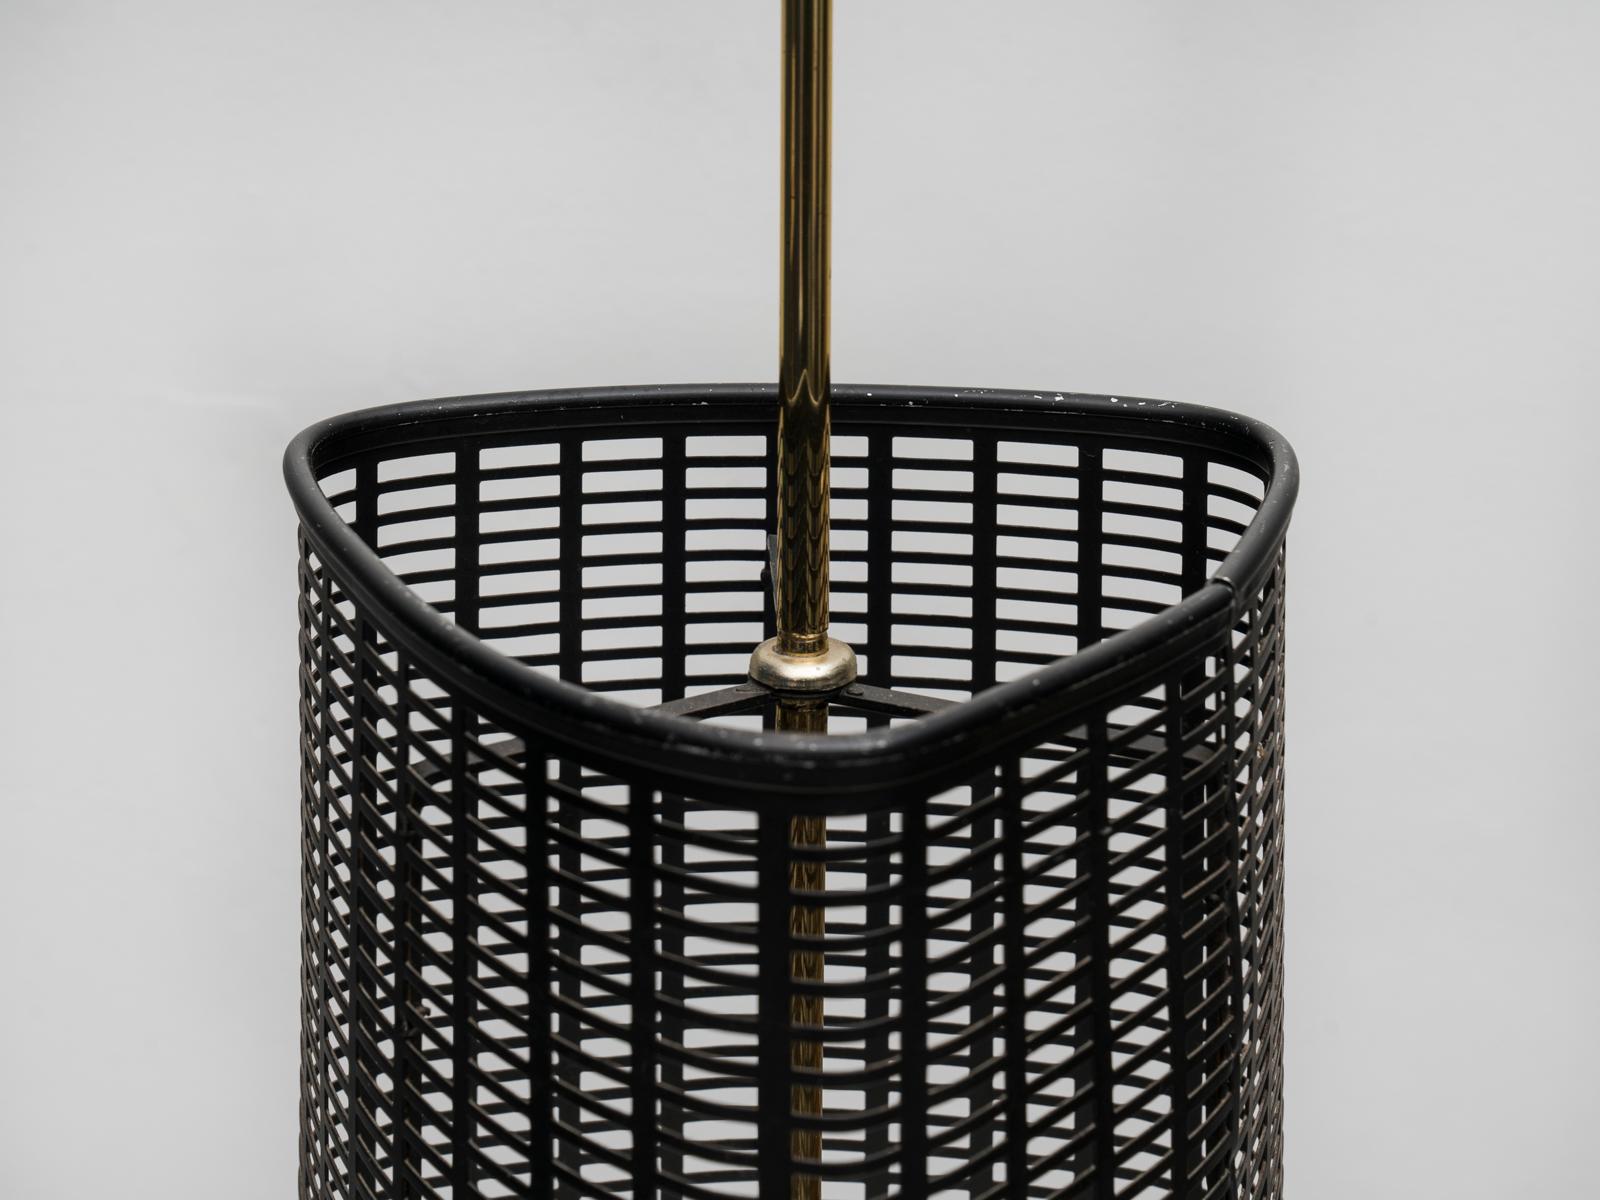 Elegant porte-parapluie italien des années 1950, de belle facture, avec une base en fonte, une tige en laiton avec un plateau verni ivoire et un corps en métal perforé noir. Peut-être inspirée par le travail de Mathieu Matégot, cette pièce est